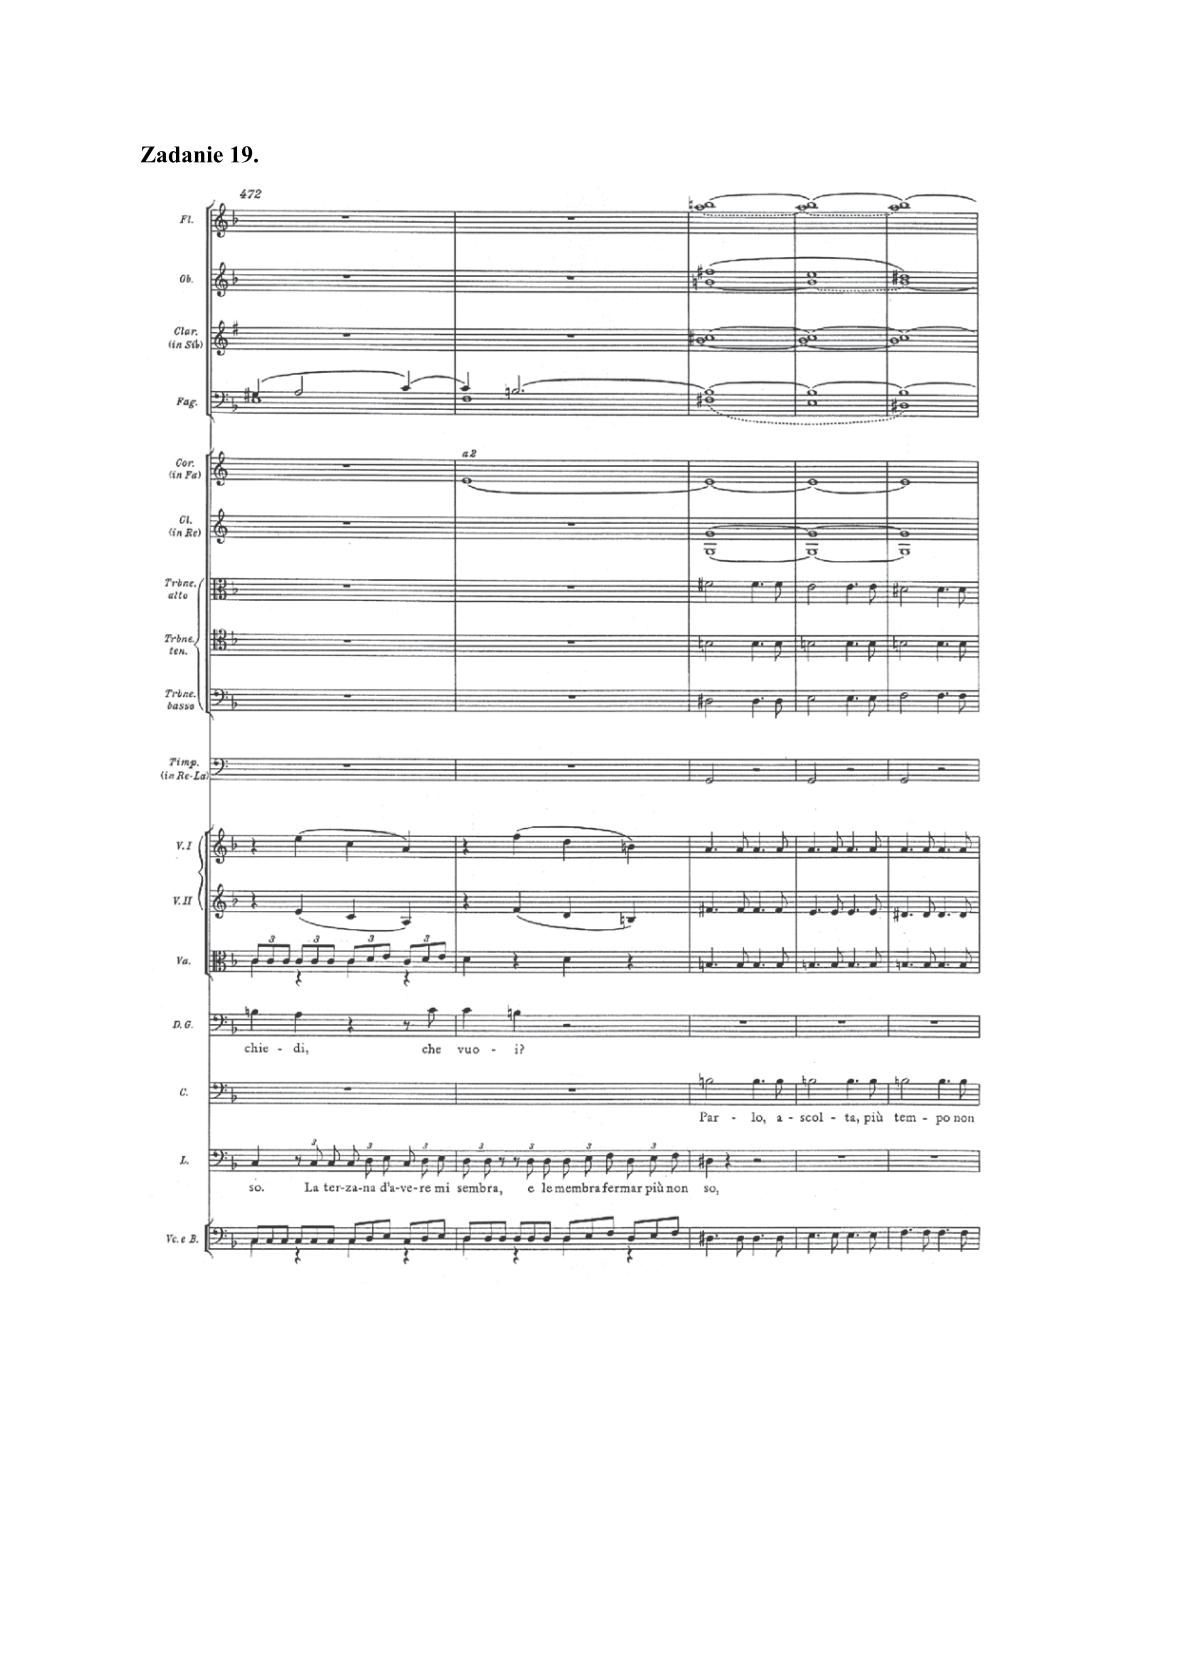 historia-muzyki-przykladowe-nuty-poziom-rozszerzony-matura-2014-str.22